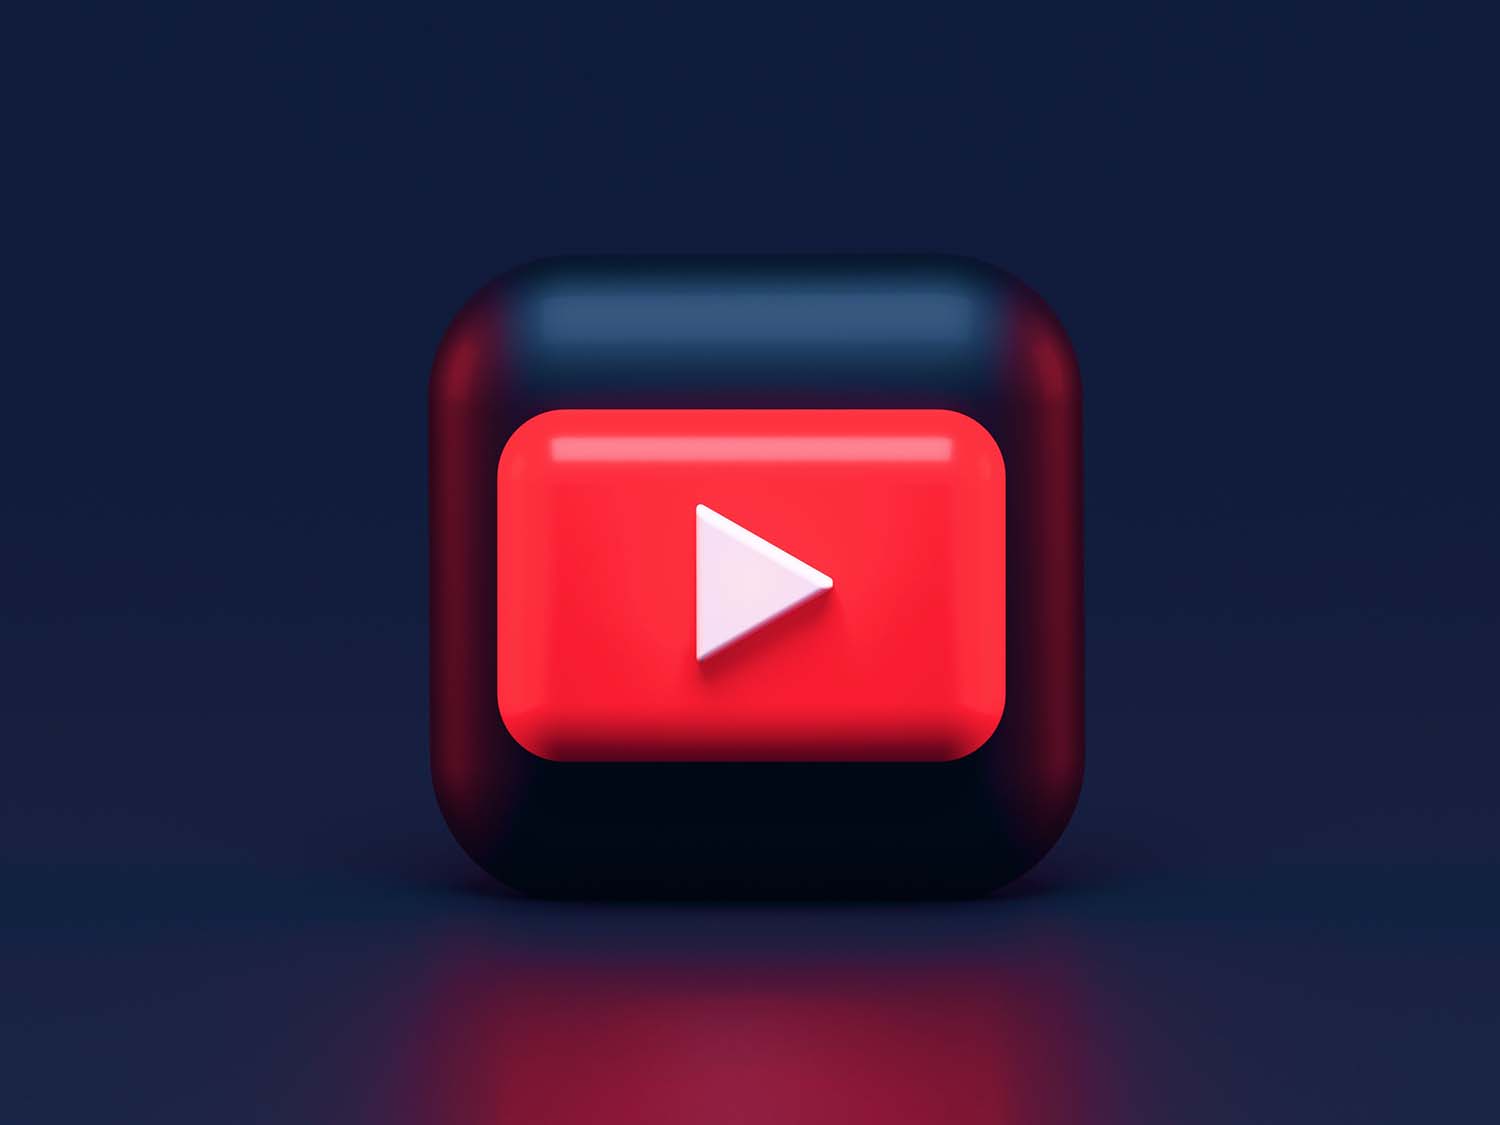 Illustration of the YouTube logo